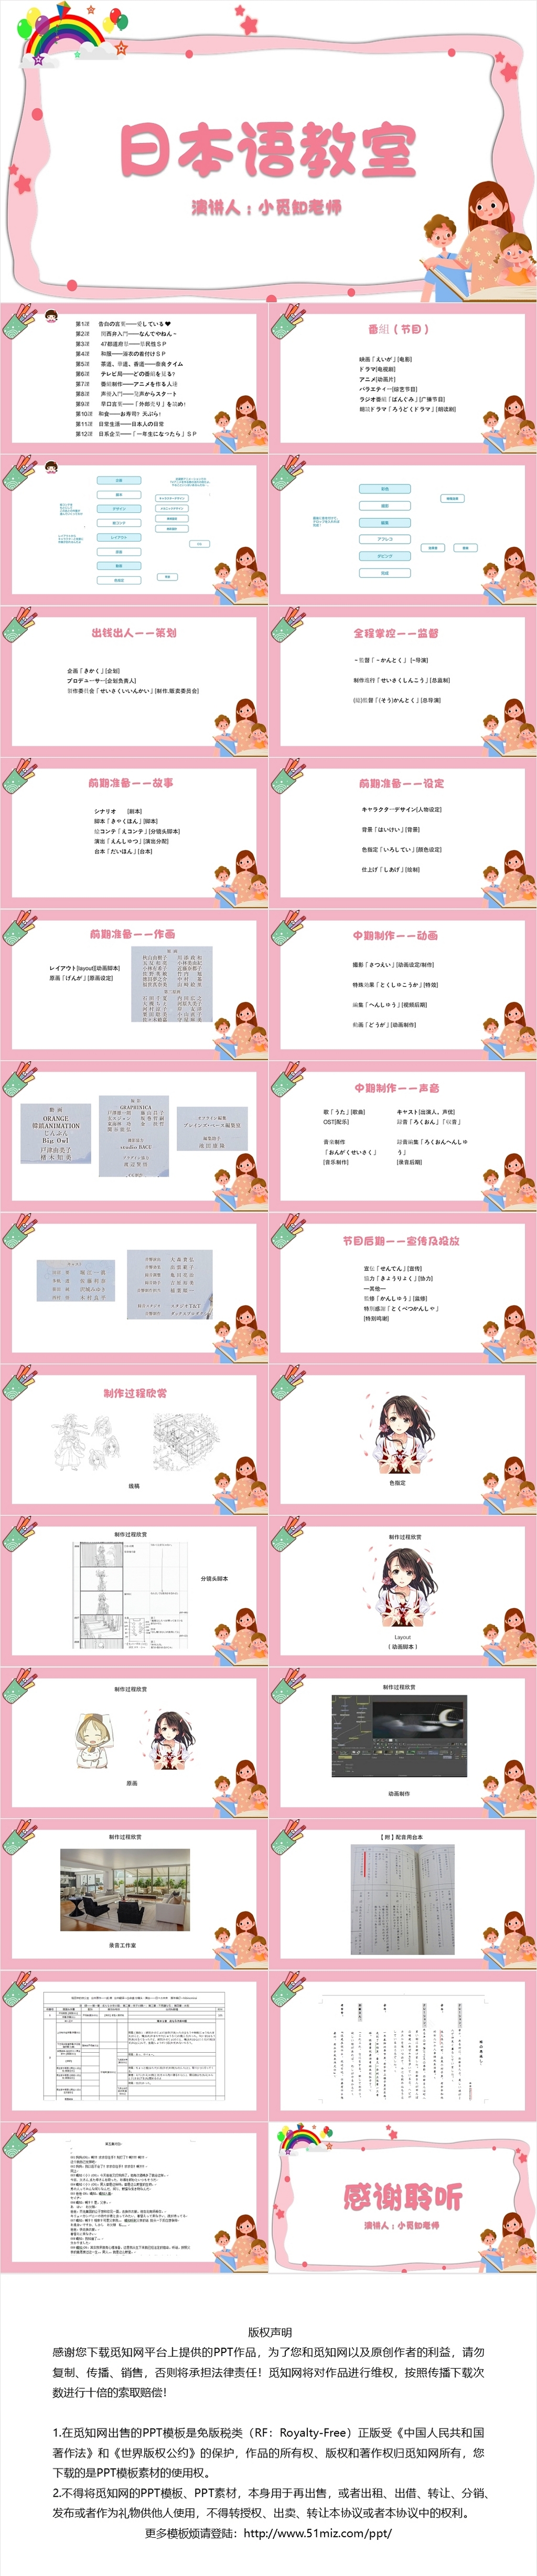 粉色卡通风日本语教学日语教学PPT模板日语教学ppt